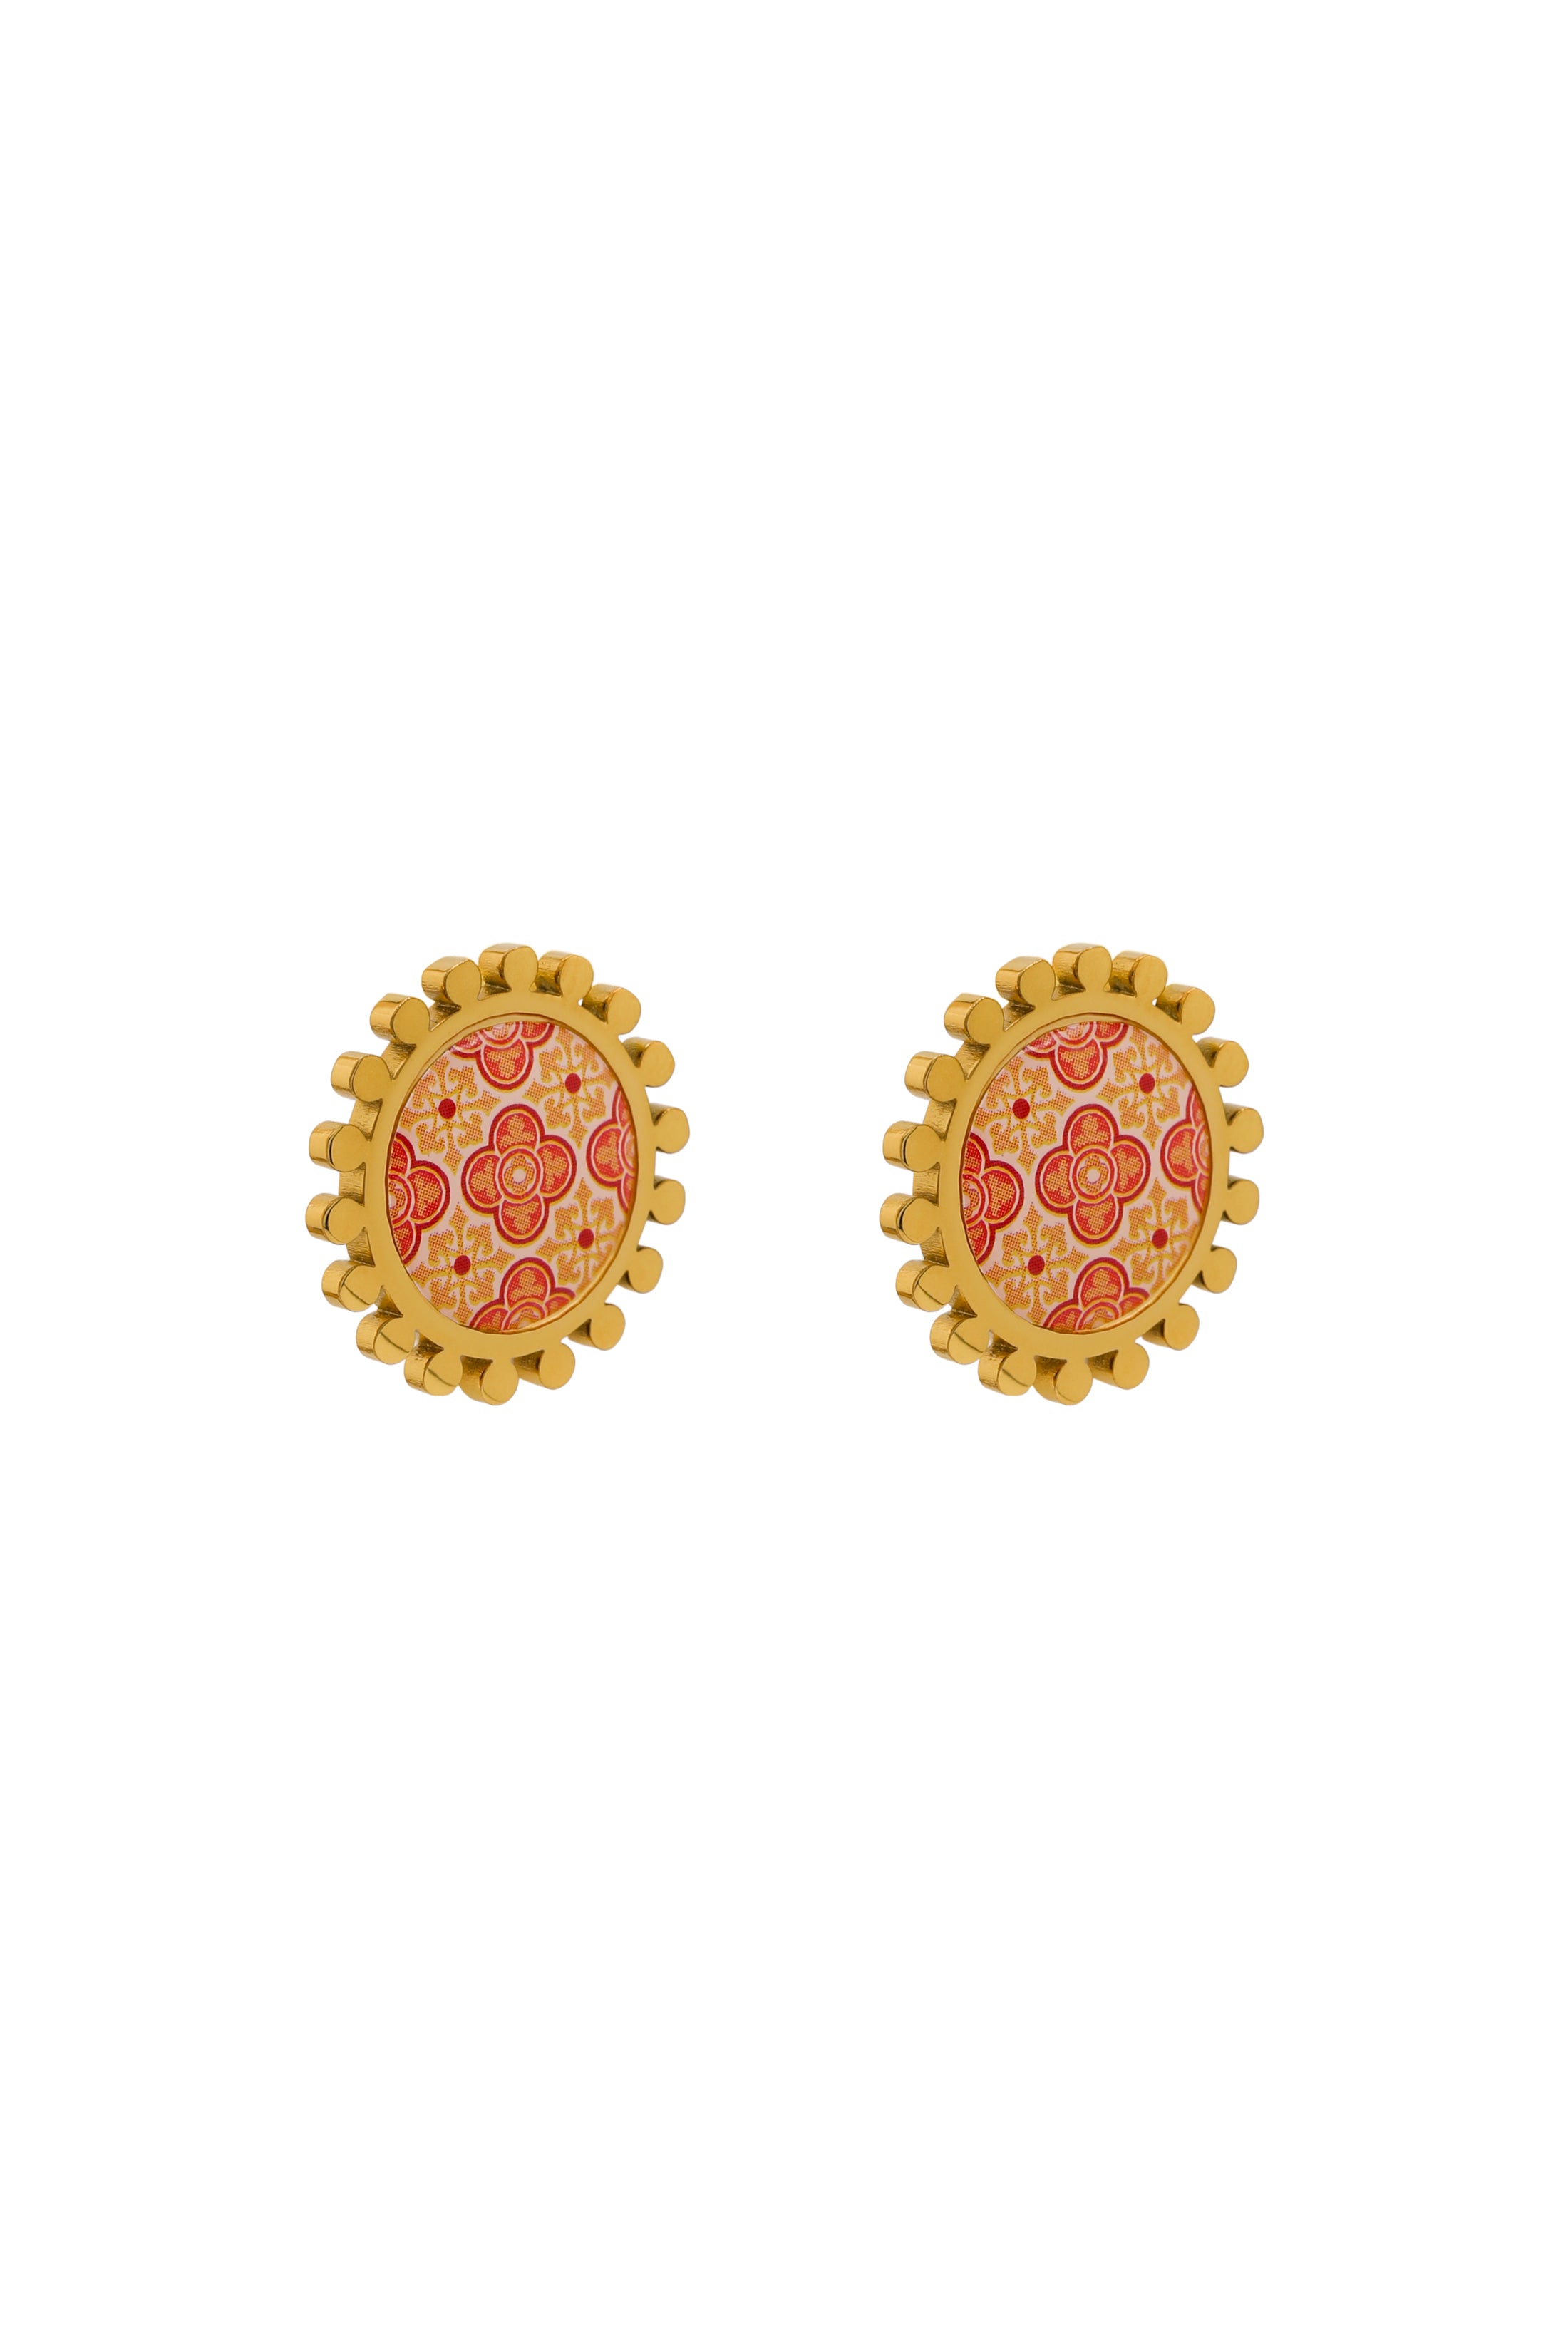 Maltese Tile Print Stud Earring Set - Red &amp; Ochre